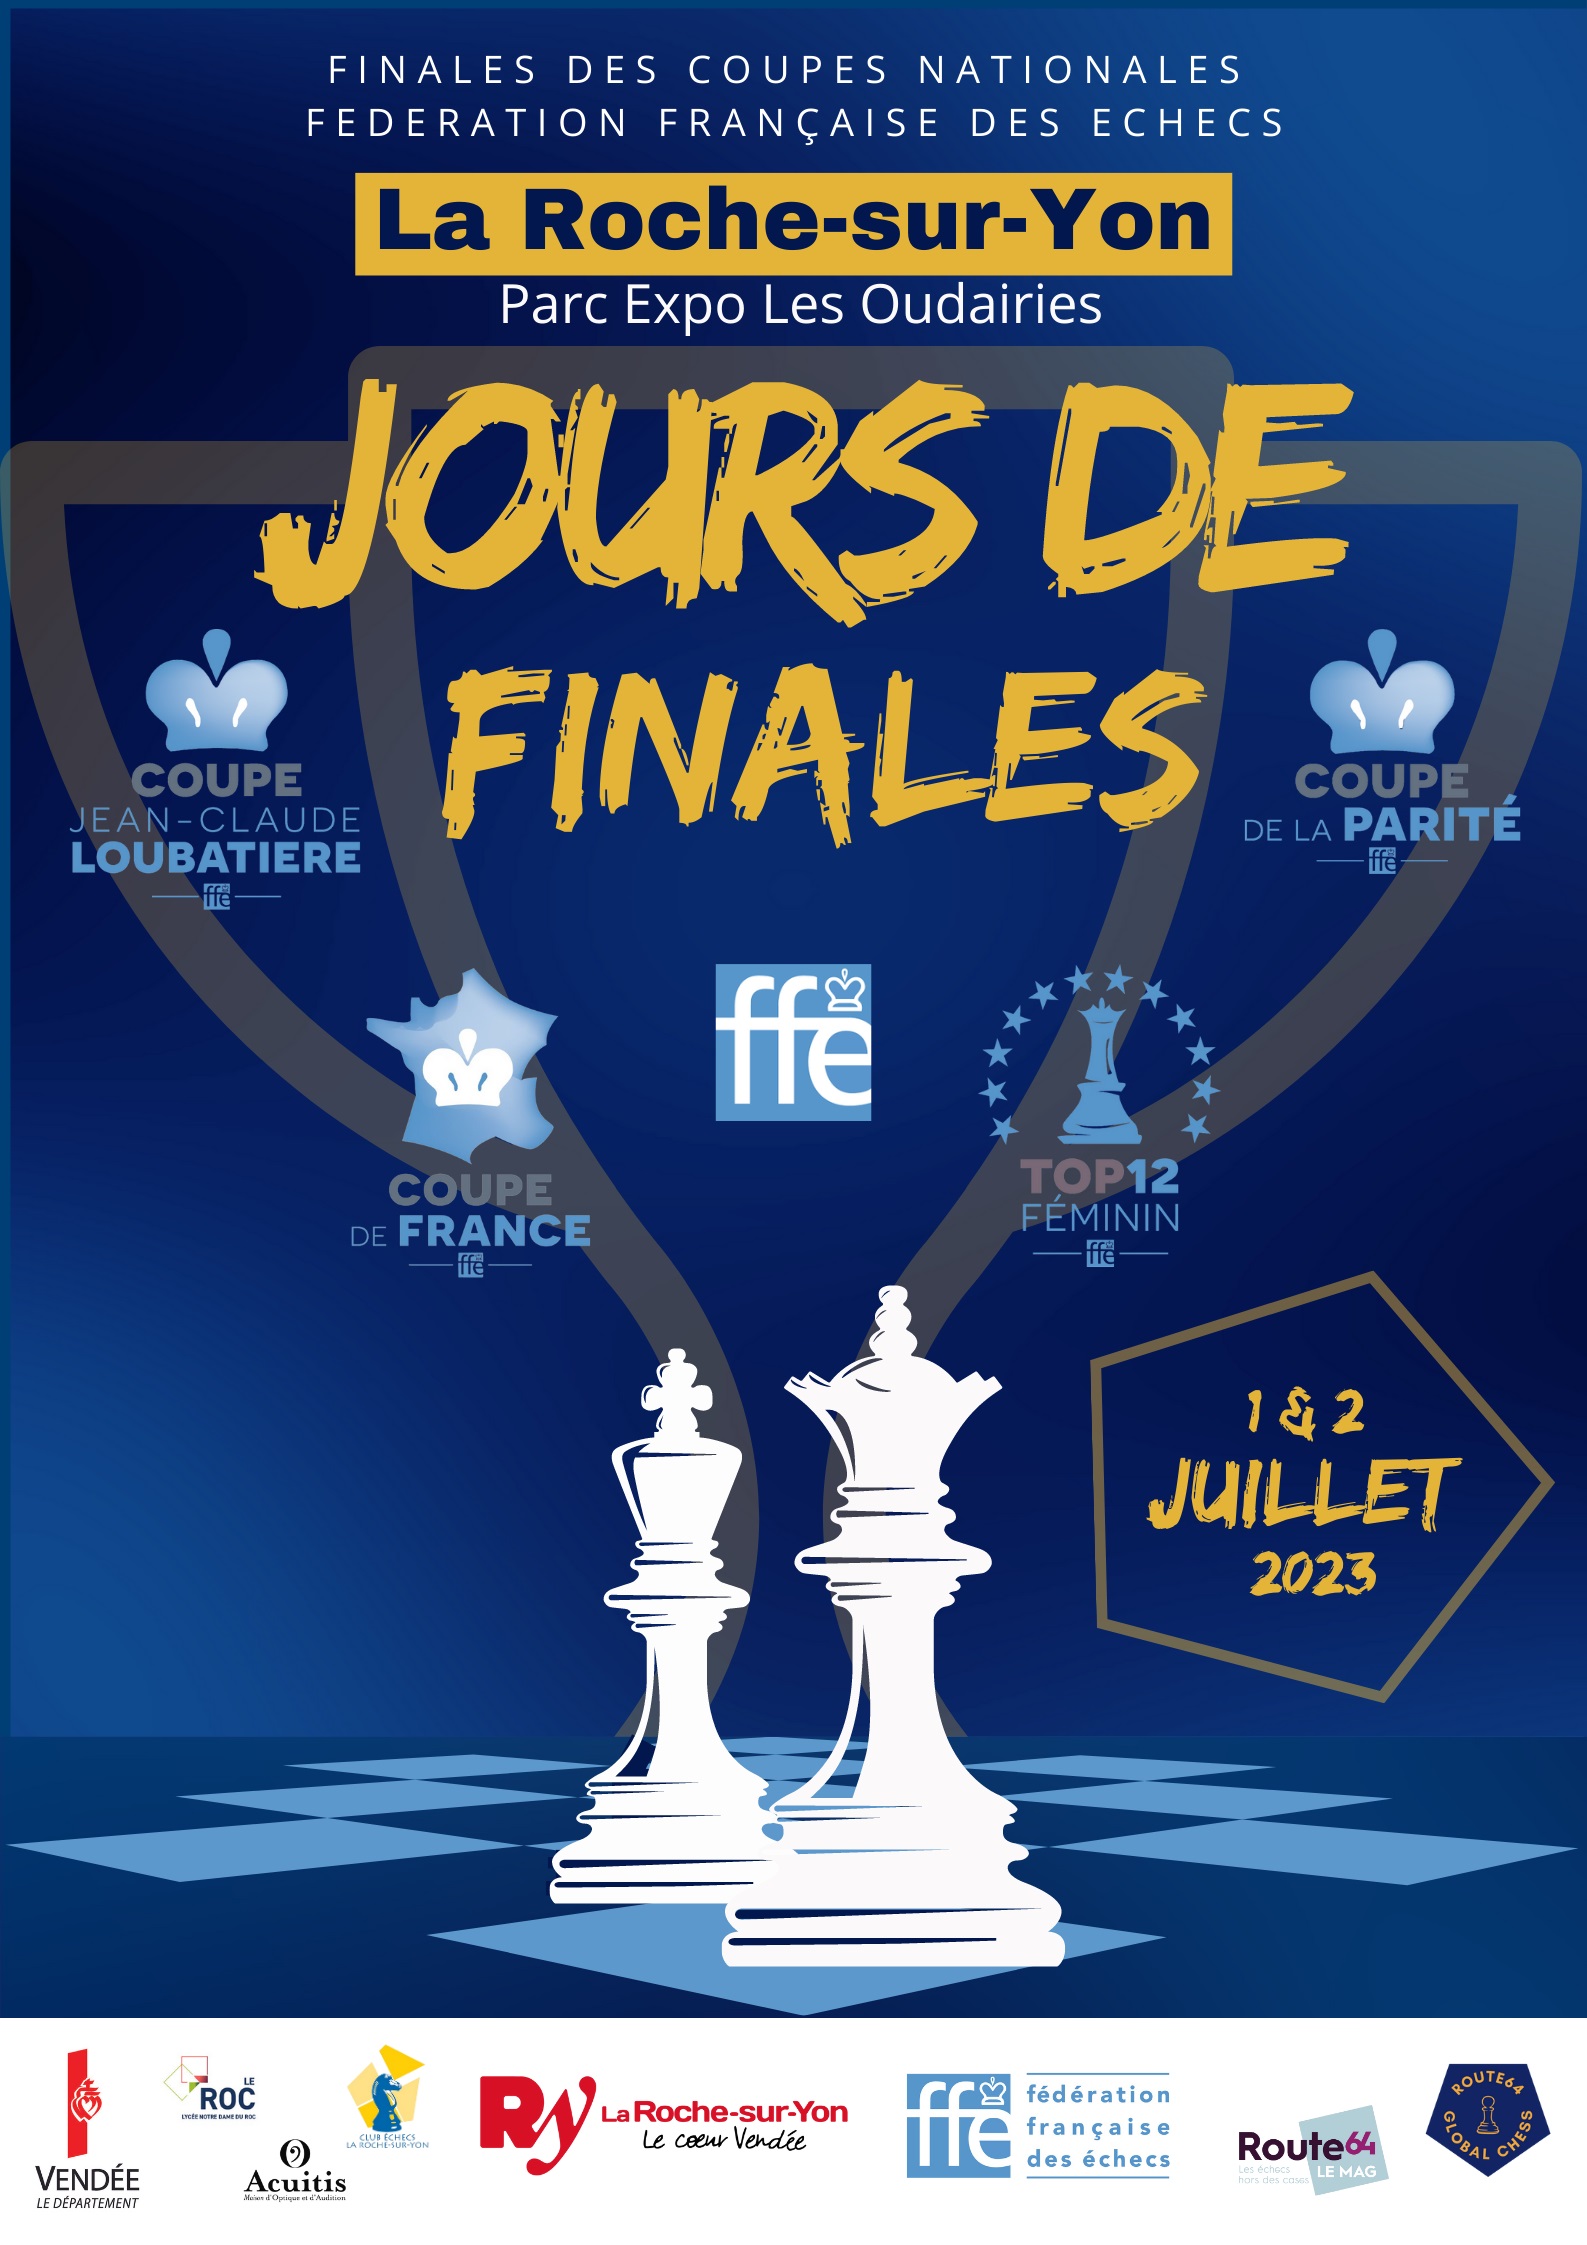 Le Corsica Chess Club, en route pour la finale nationale de la coupe de la parité à La Roche-sur-Yon